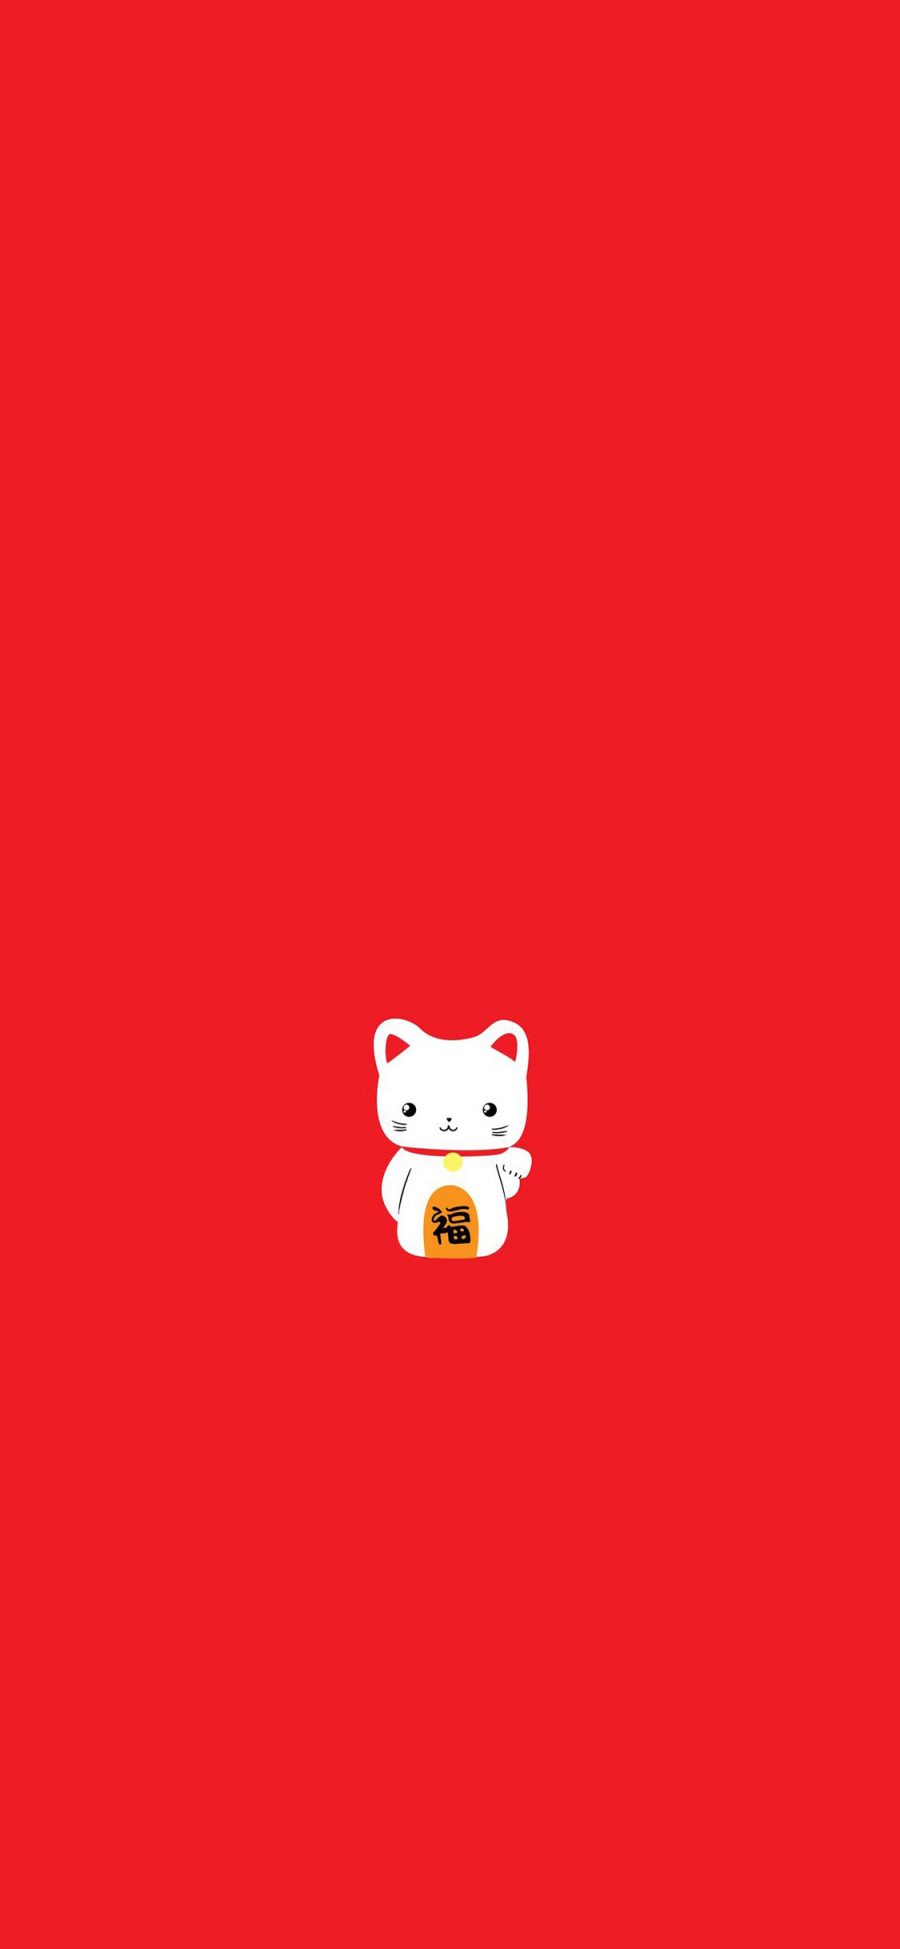 [2436×1125]招财猫 红色 福 可爱 卡通 苹果手机动漫壁纸图片